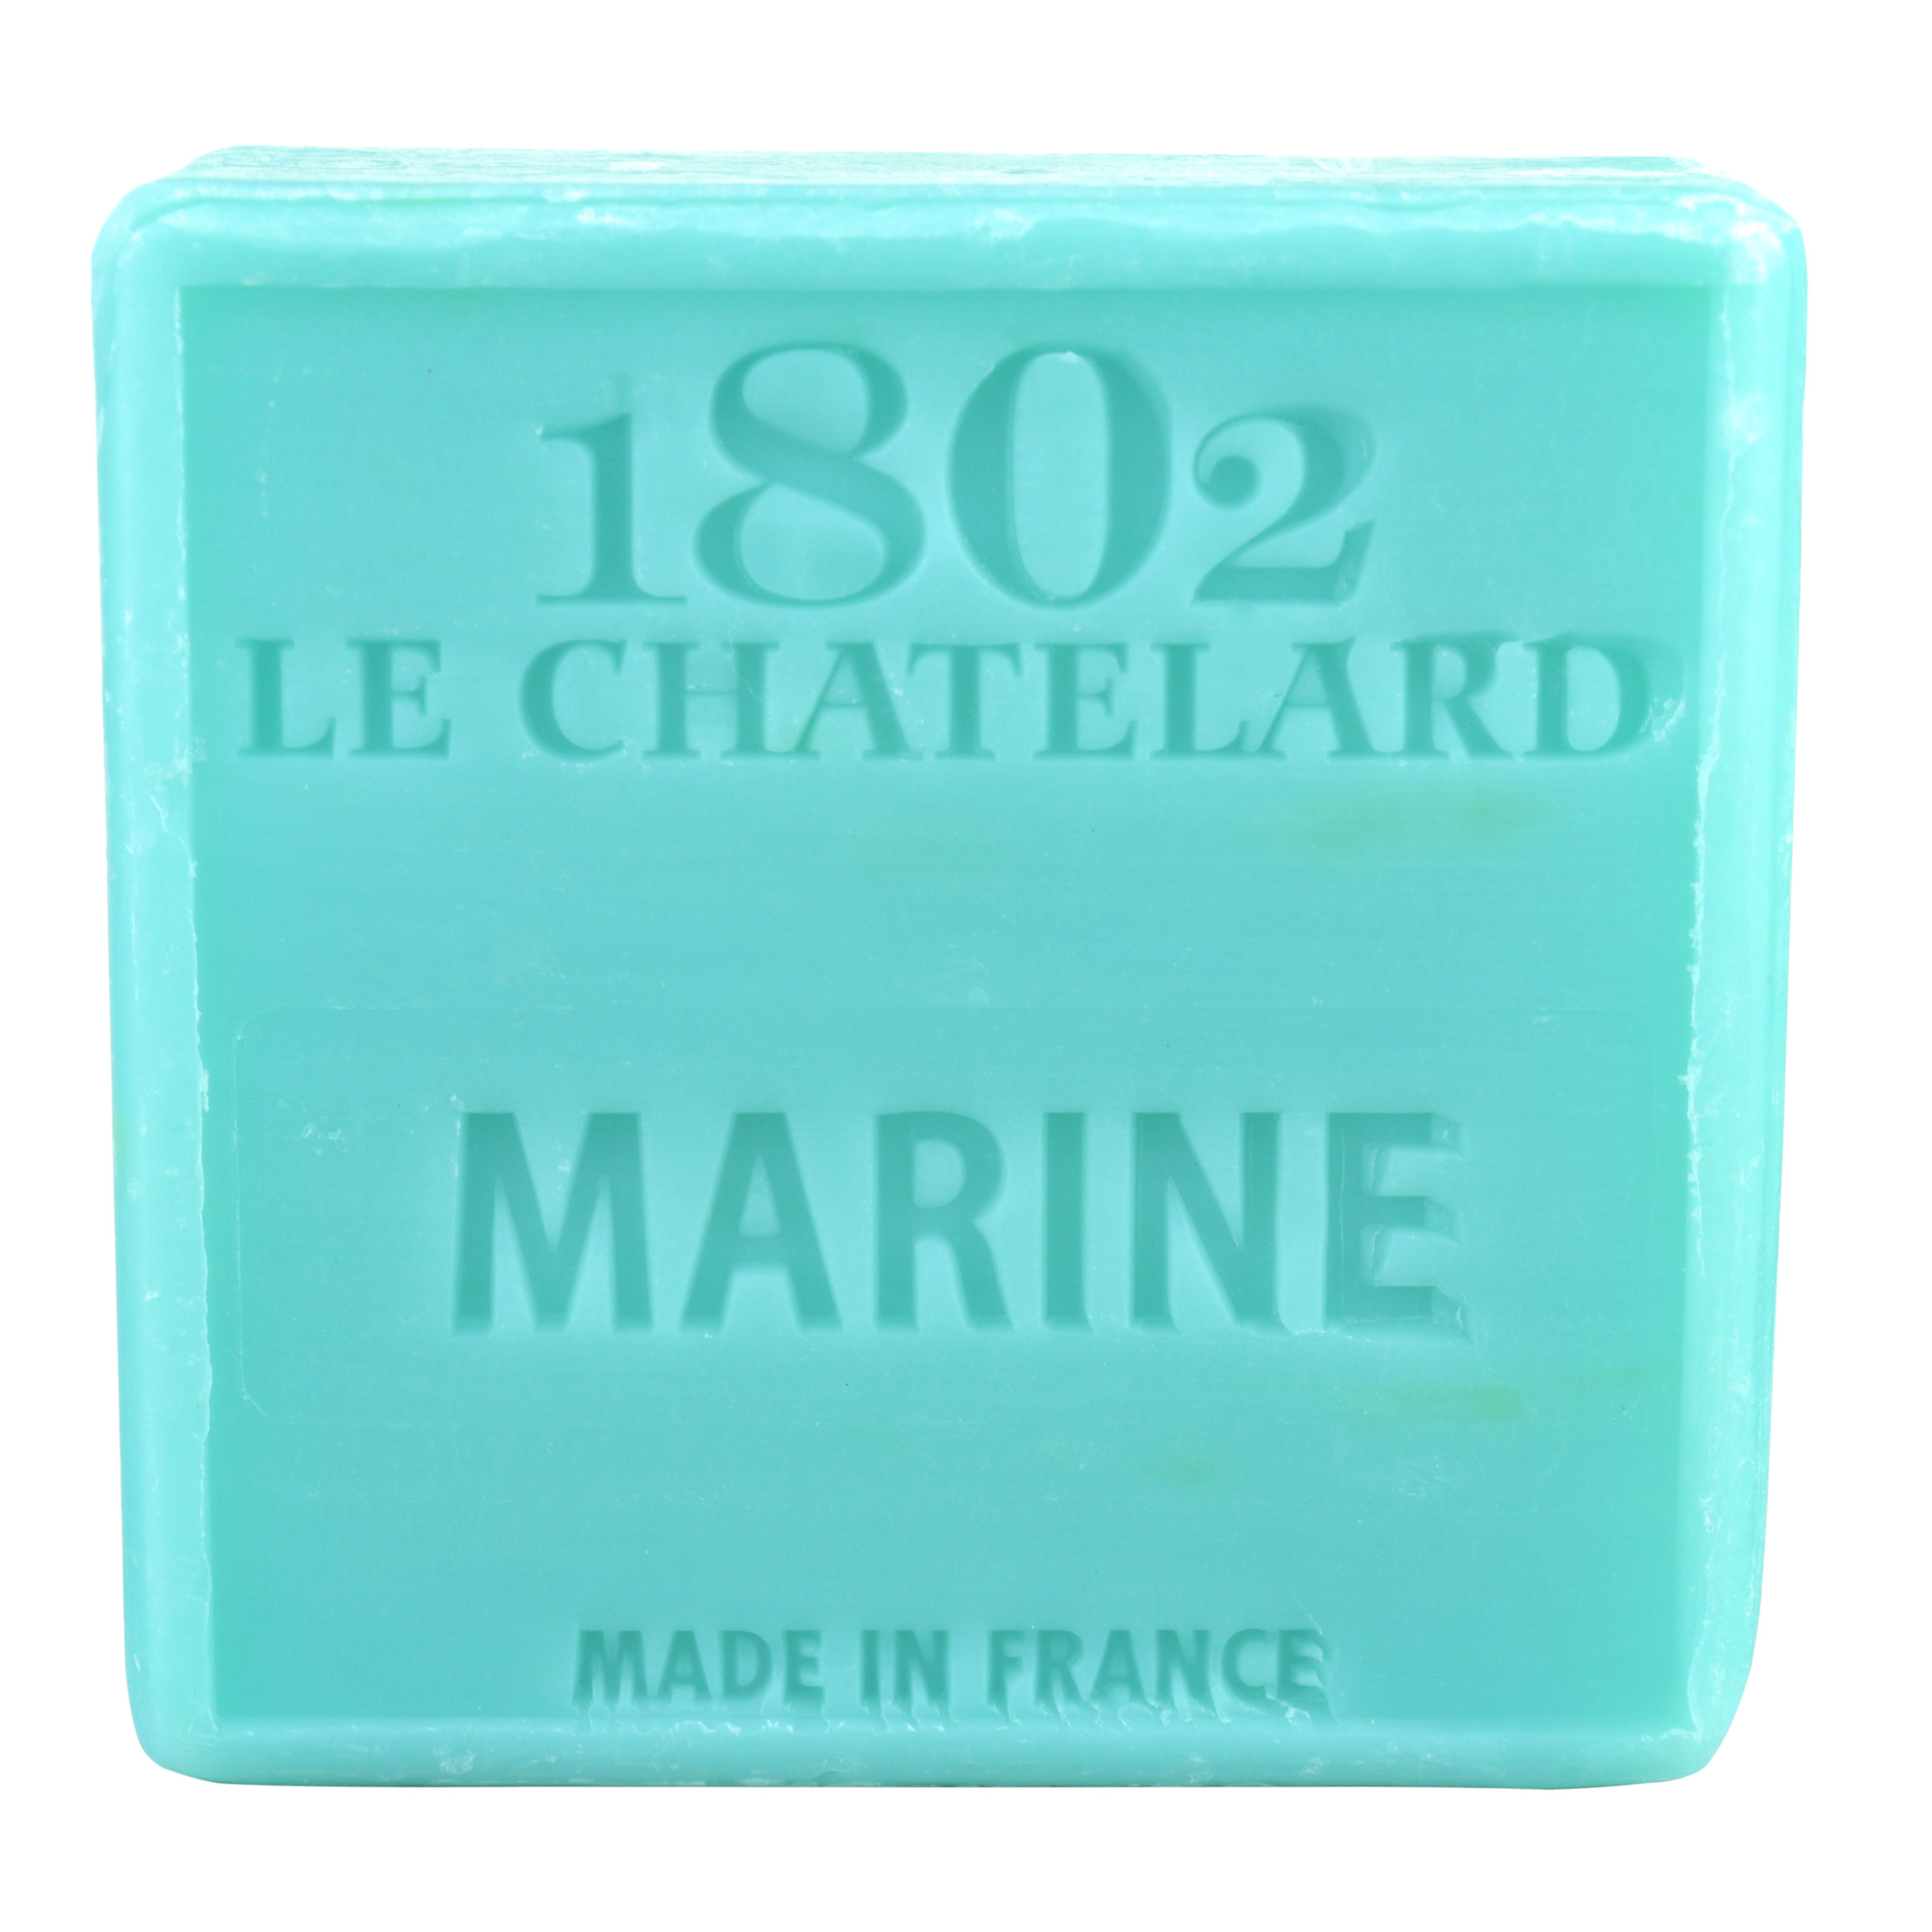 Mydło marsylskie Morskie 100g Le Chatelard 1802 bez oleju palmowego